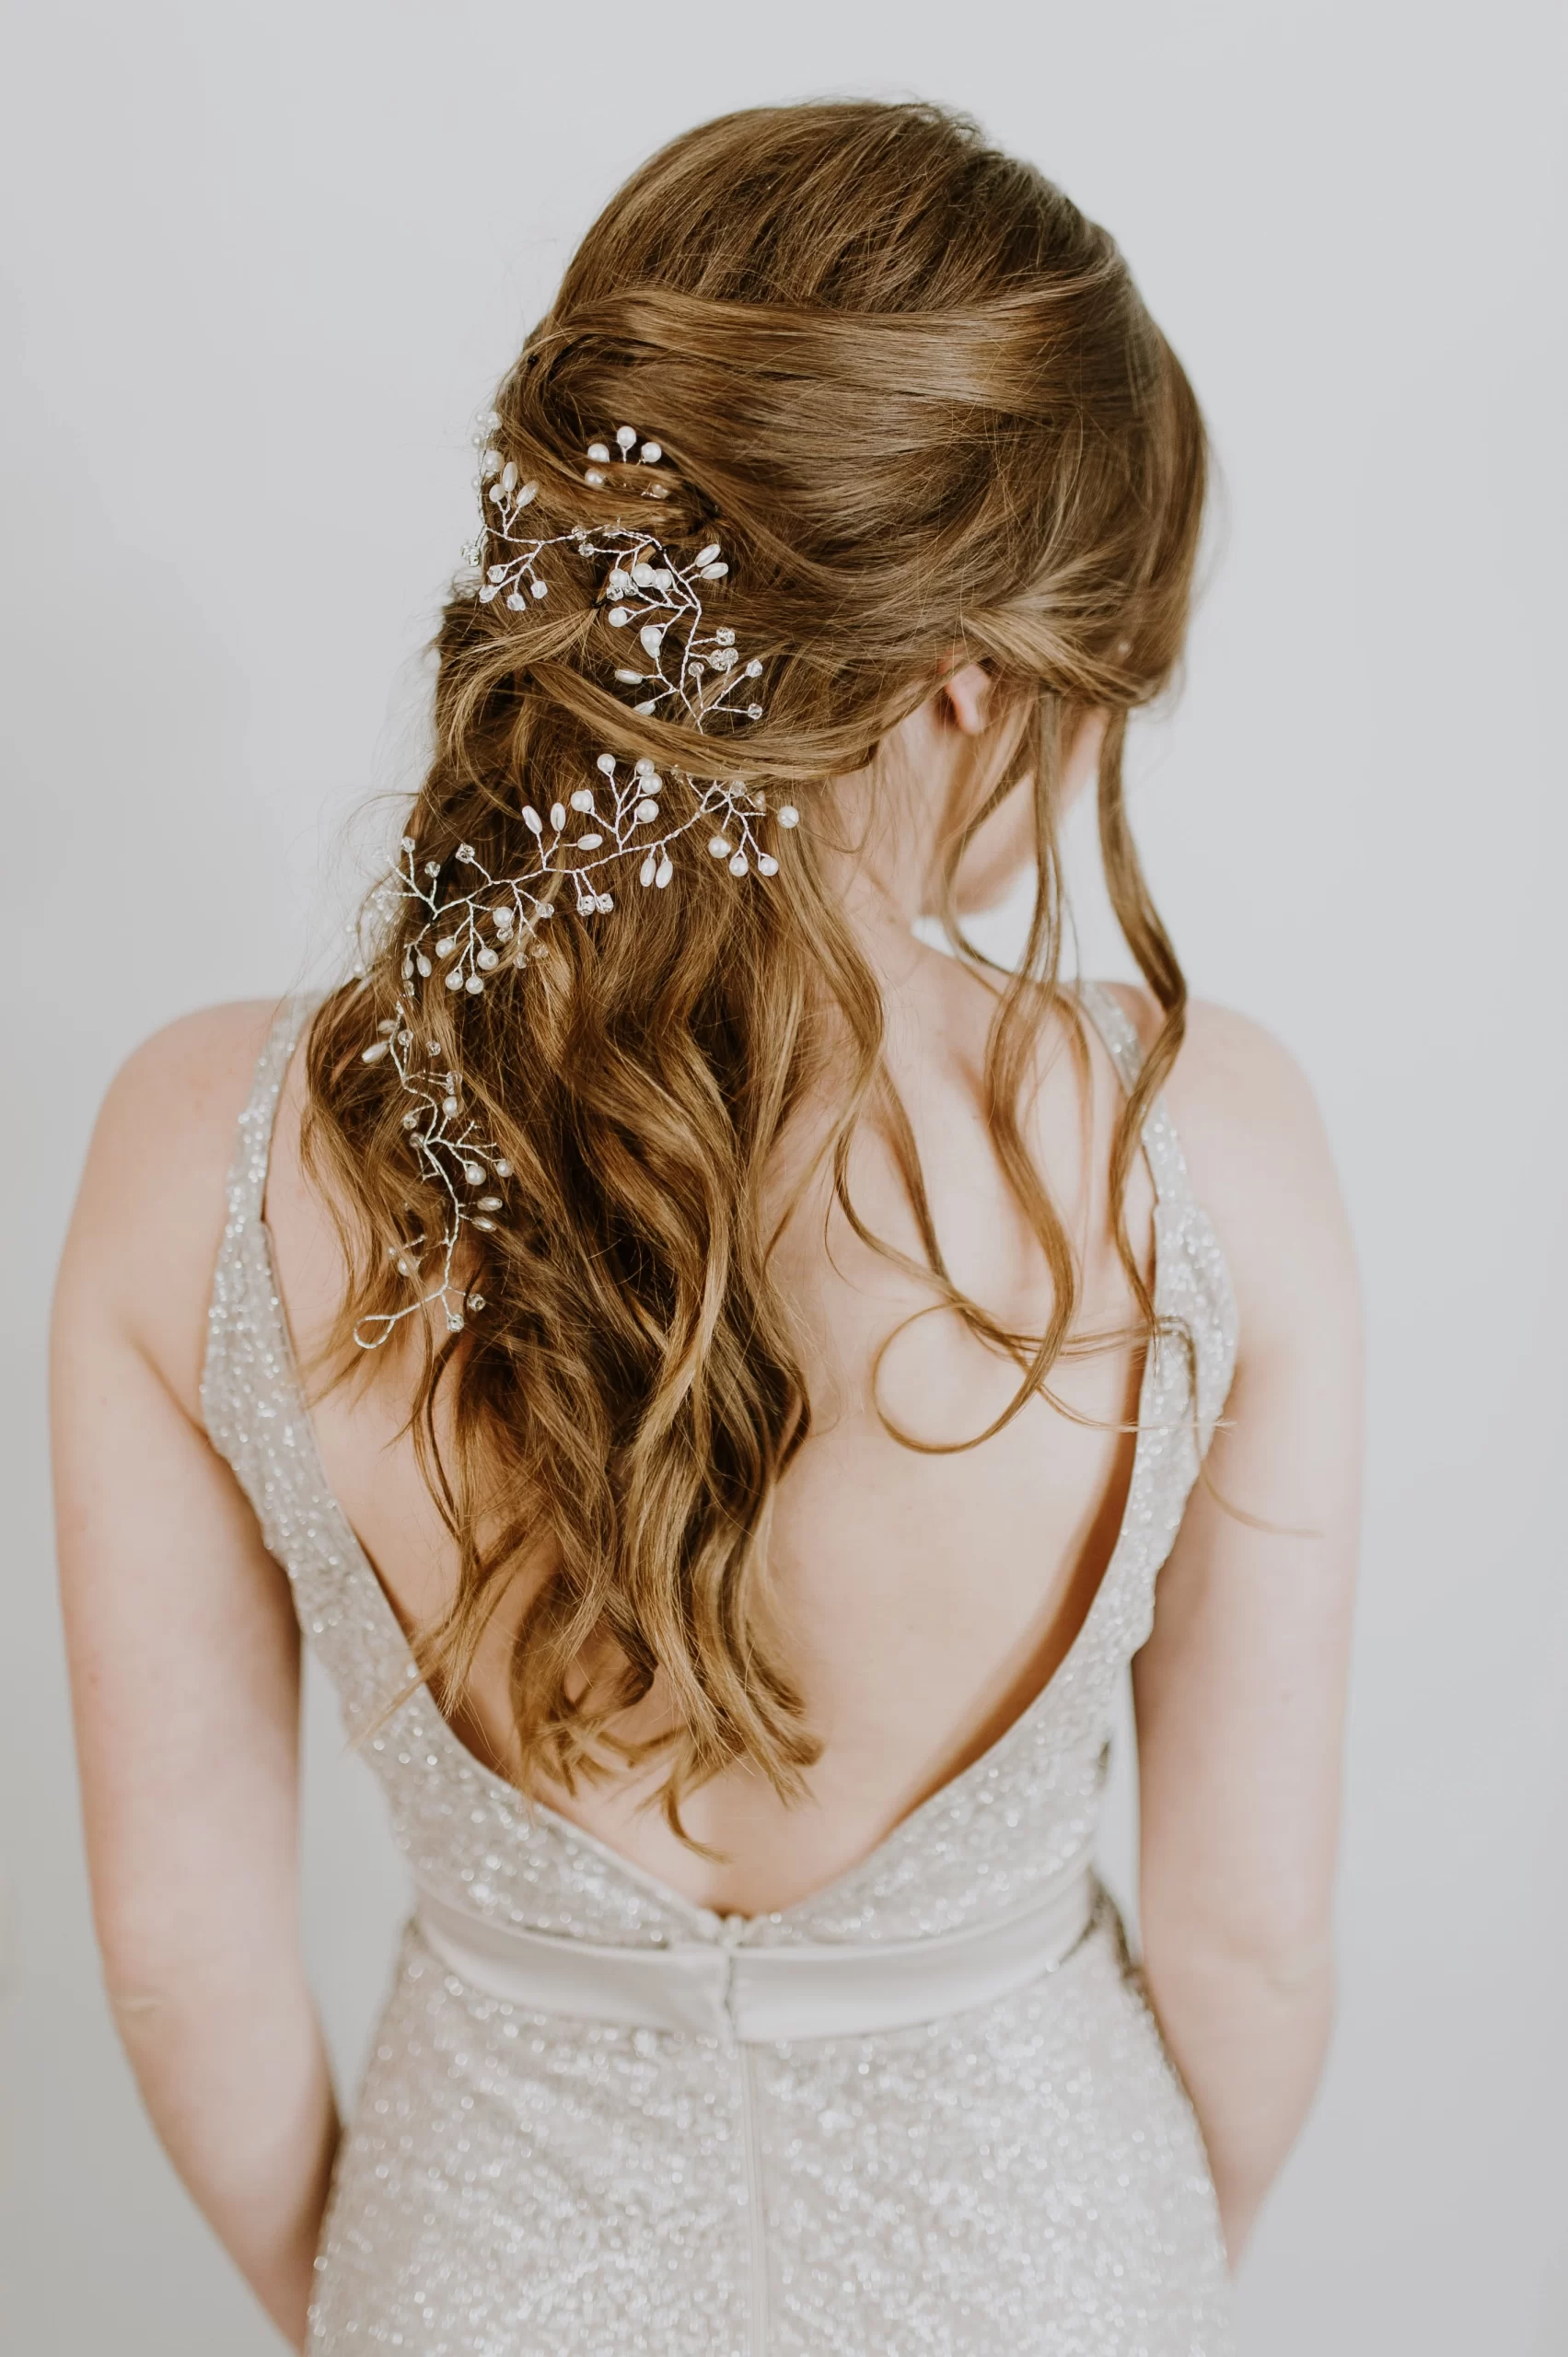 Mulher de cabelos castanho claros de costas. Ela com os cabelos semi-presos com flores brancas atreladas.